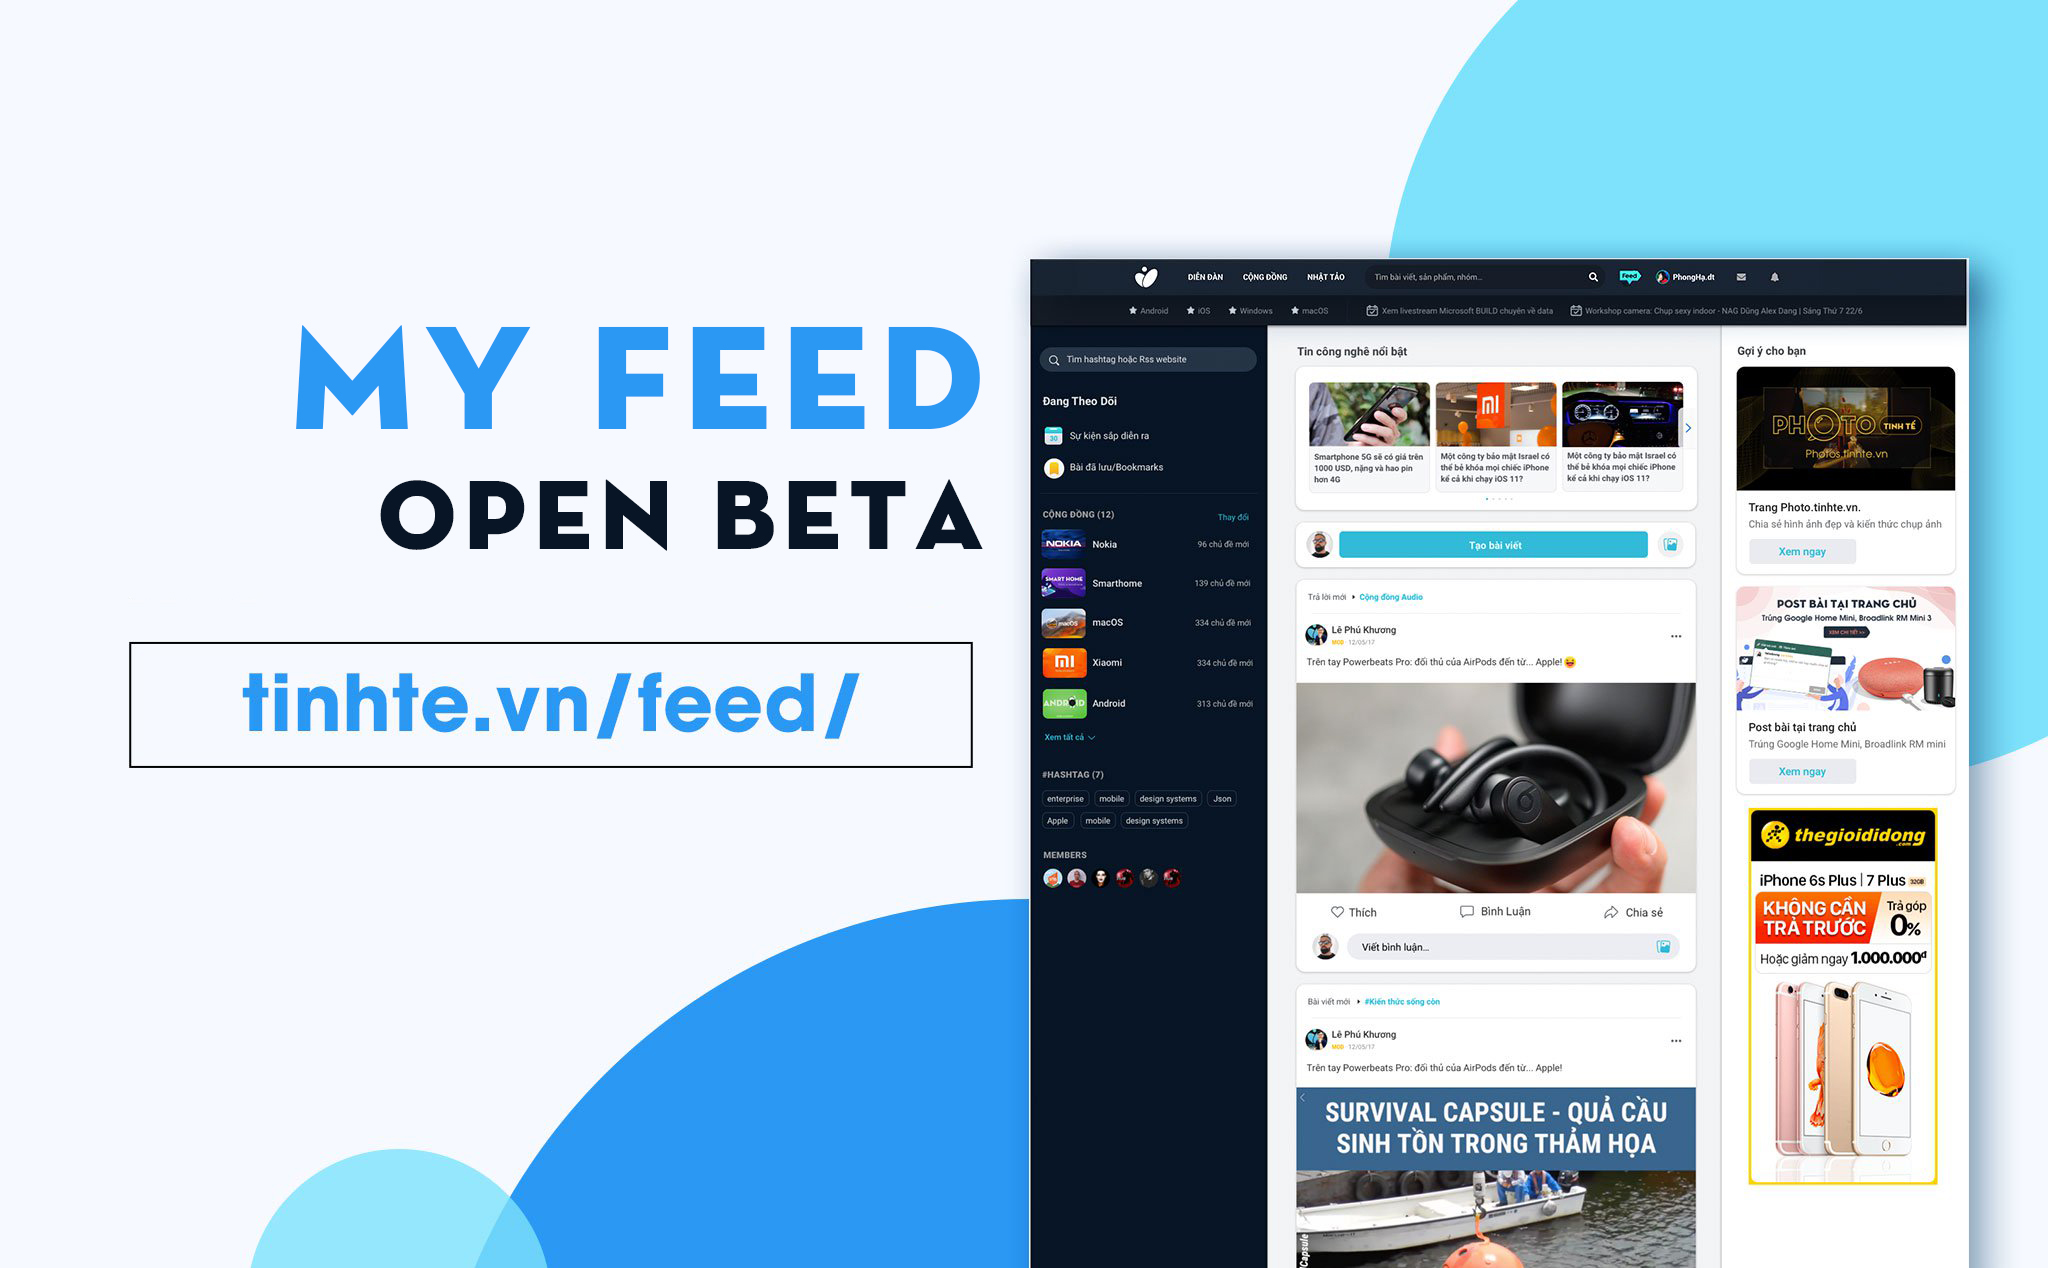 My Feed beta đã mở cho tất cả anh em Tinh tế, mời anh em trải nghiệm feed cá nhân hóa cho riêng mình